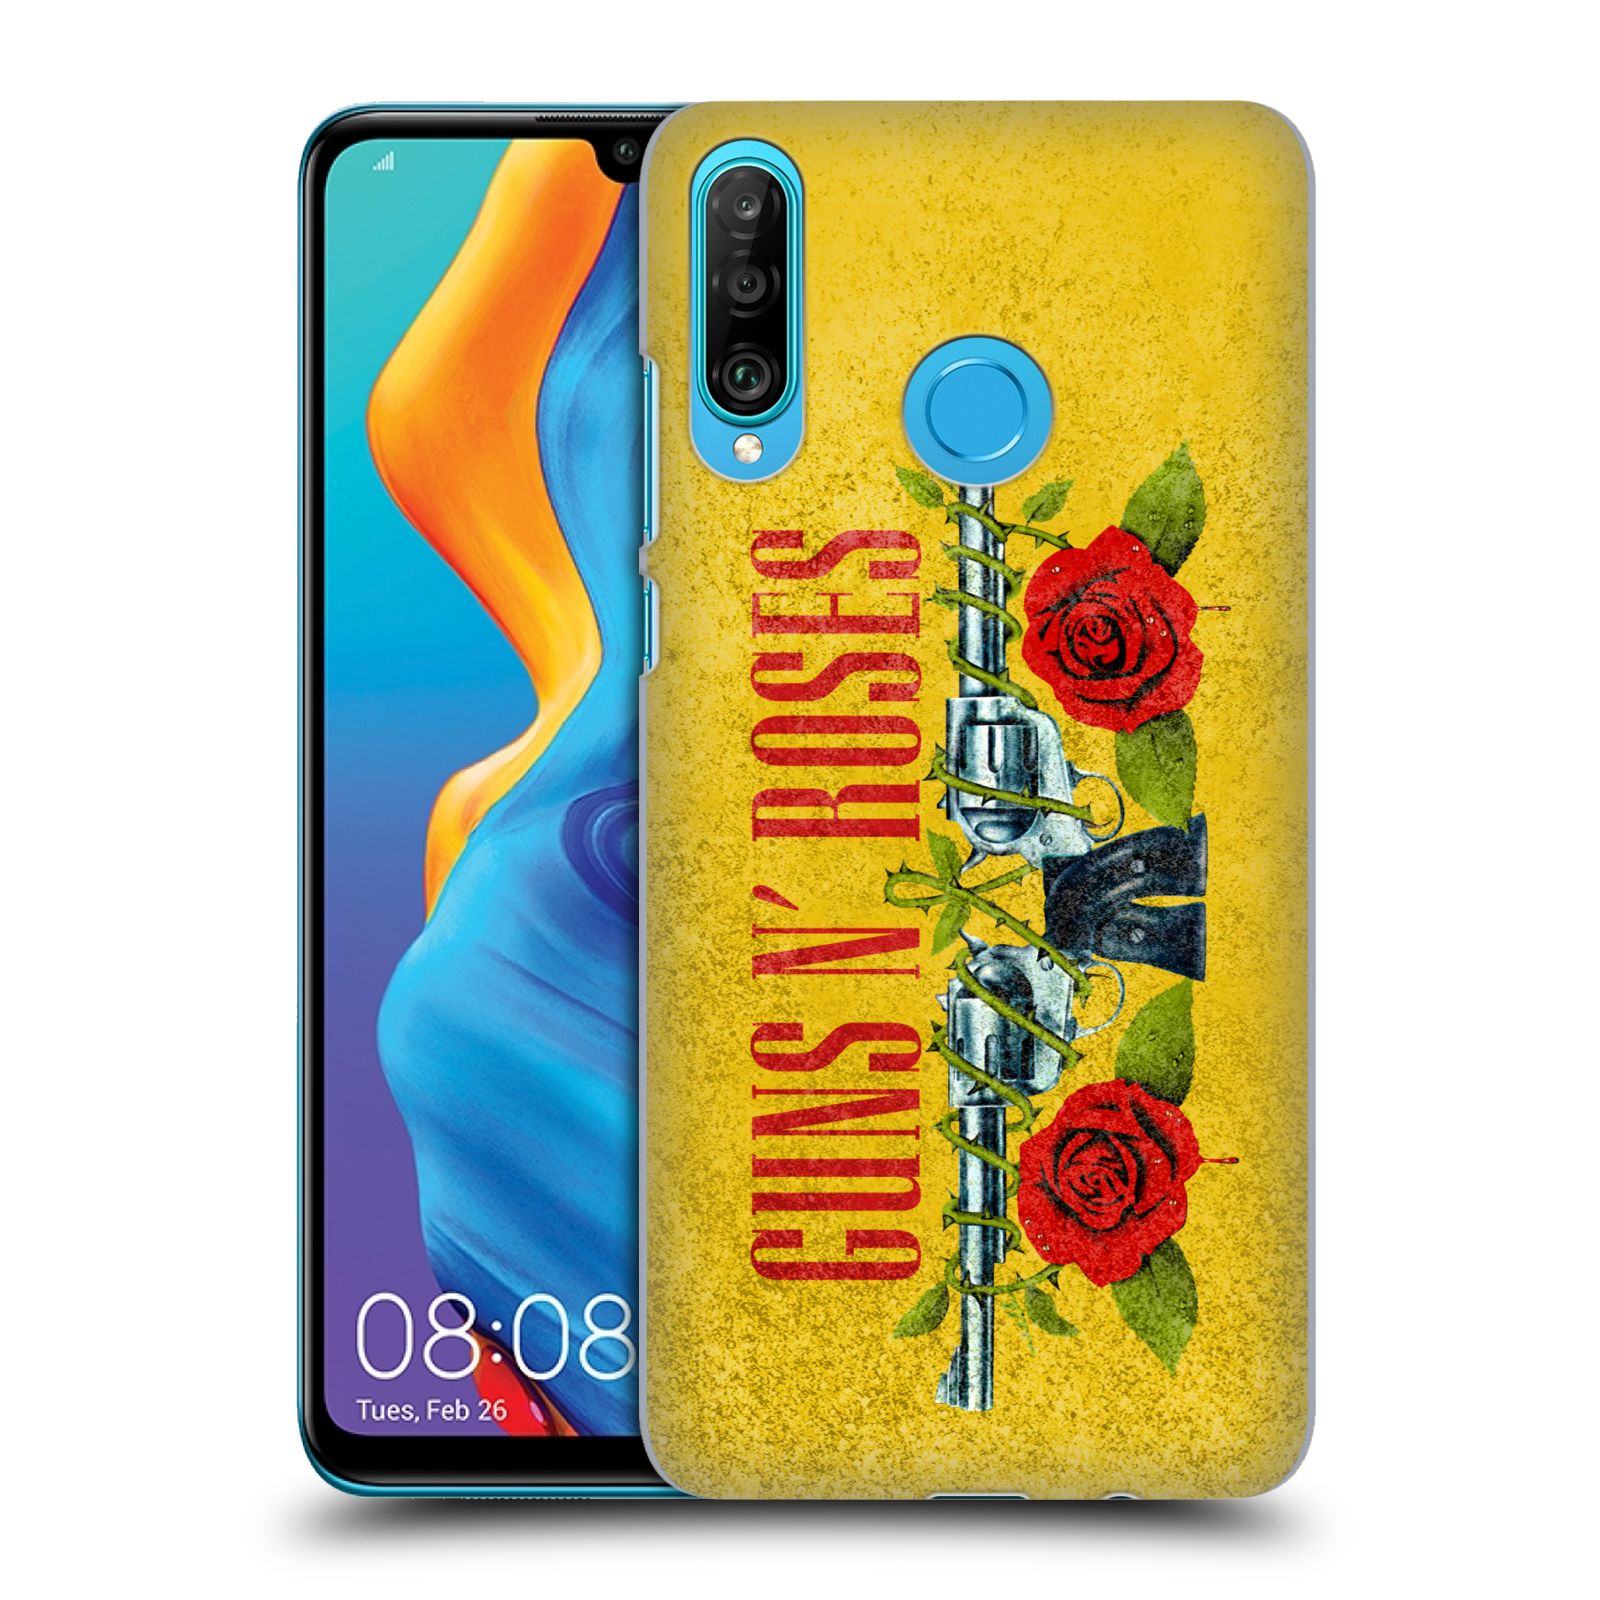 Pouzdro na mobil Huawei P30 LITE - HEAD CASE - hudební skupina Guns N Roses pistole a růže žluté pozadí